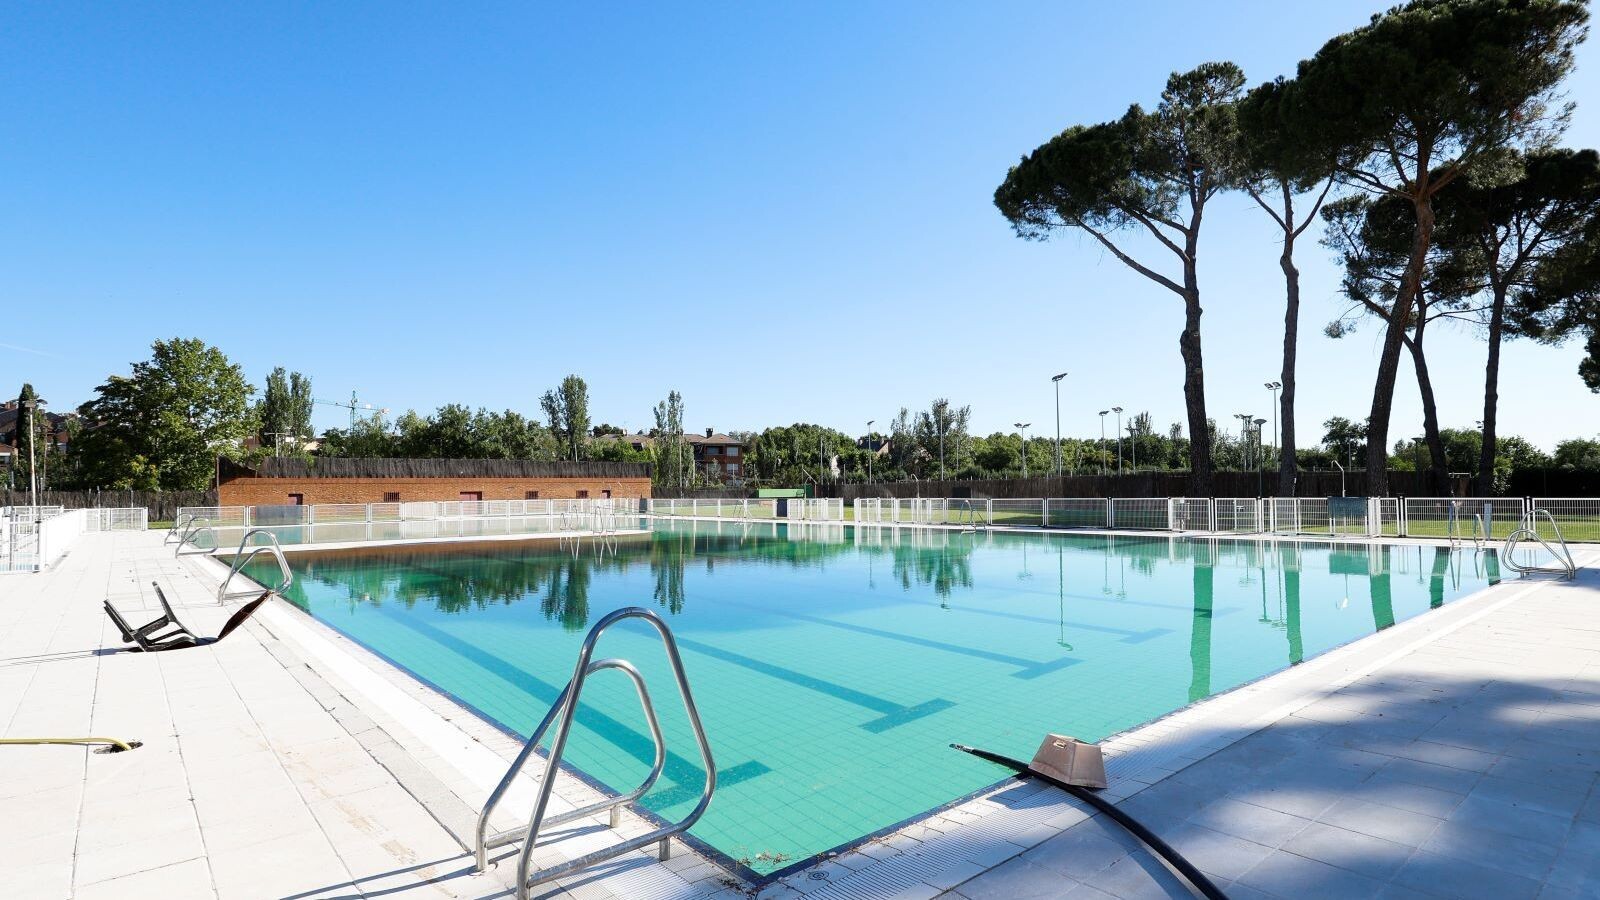 La piscina de verano del polideportivo Carlos Ruiz abre sus puertas